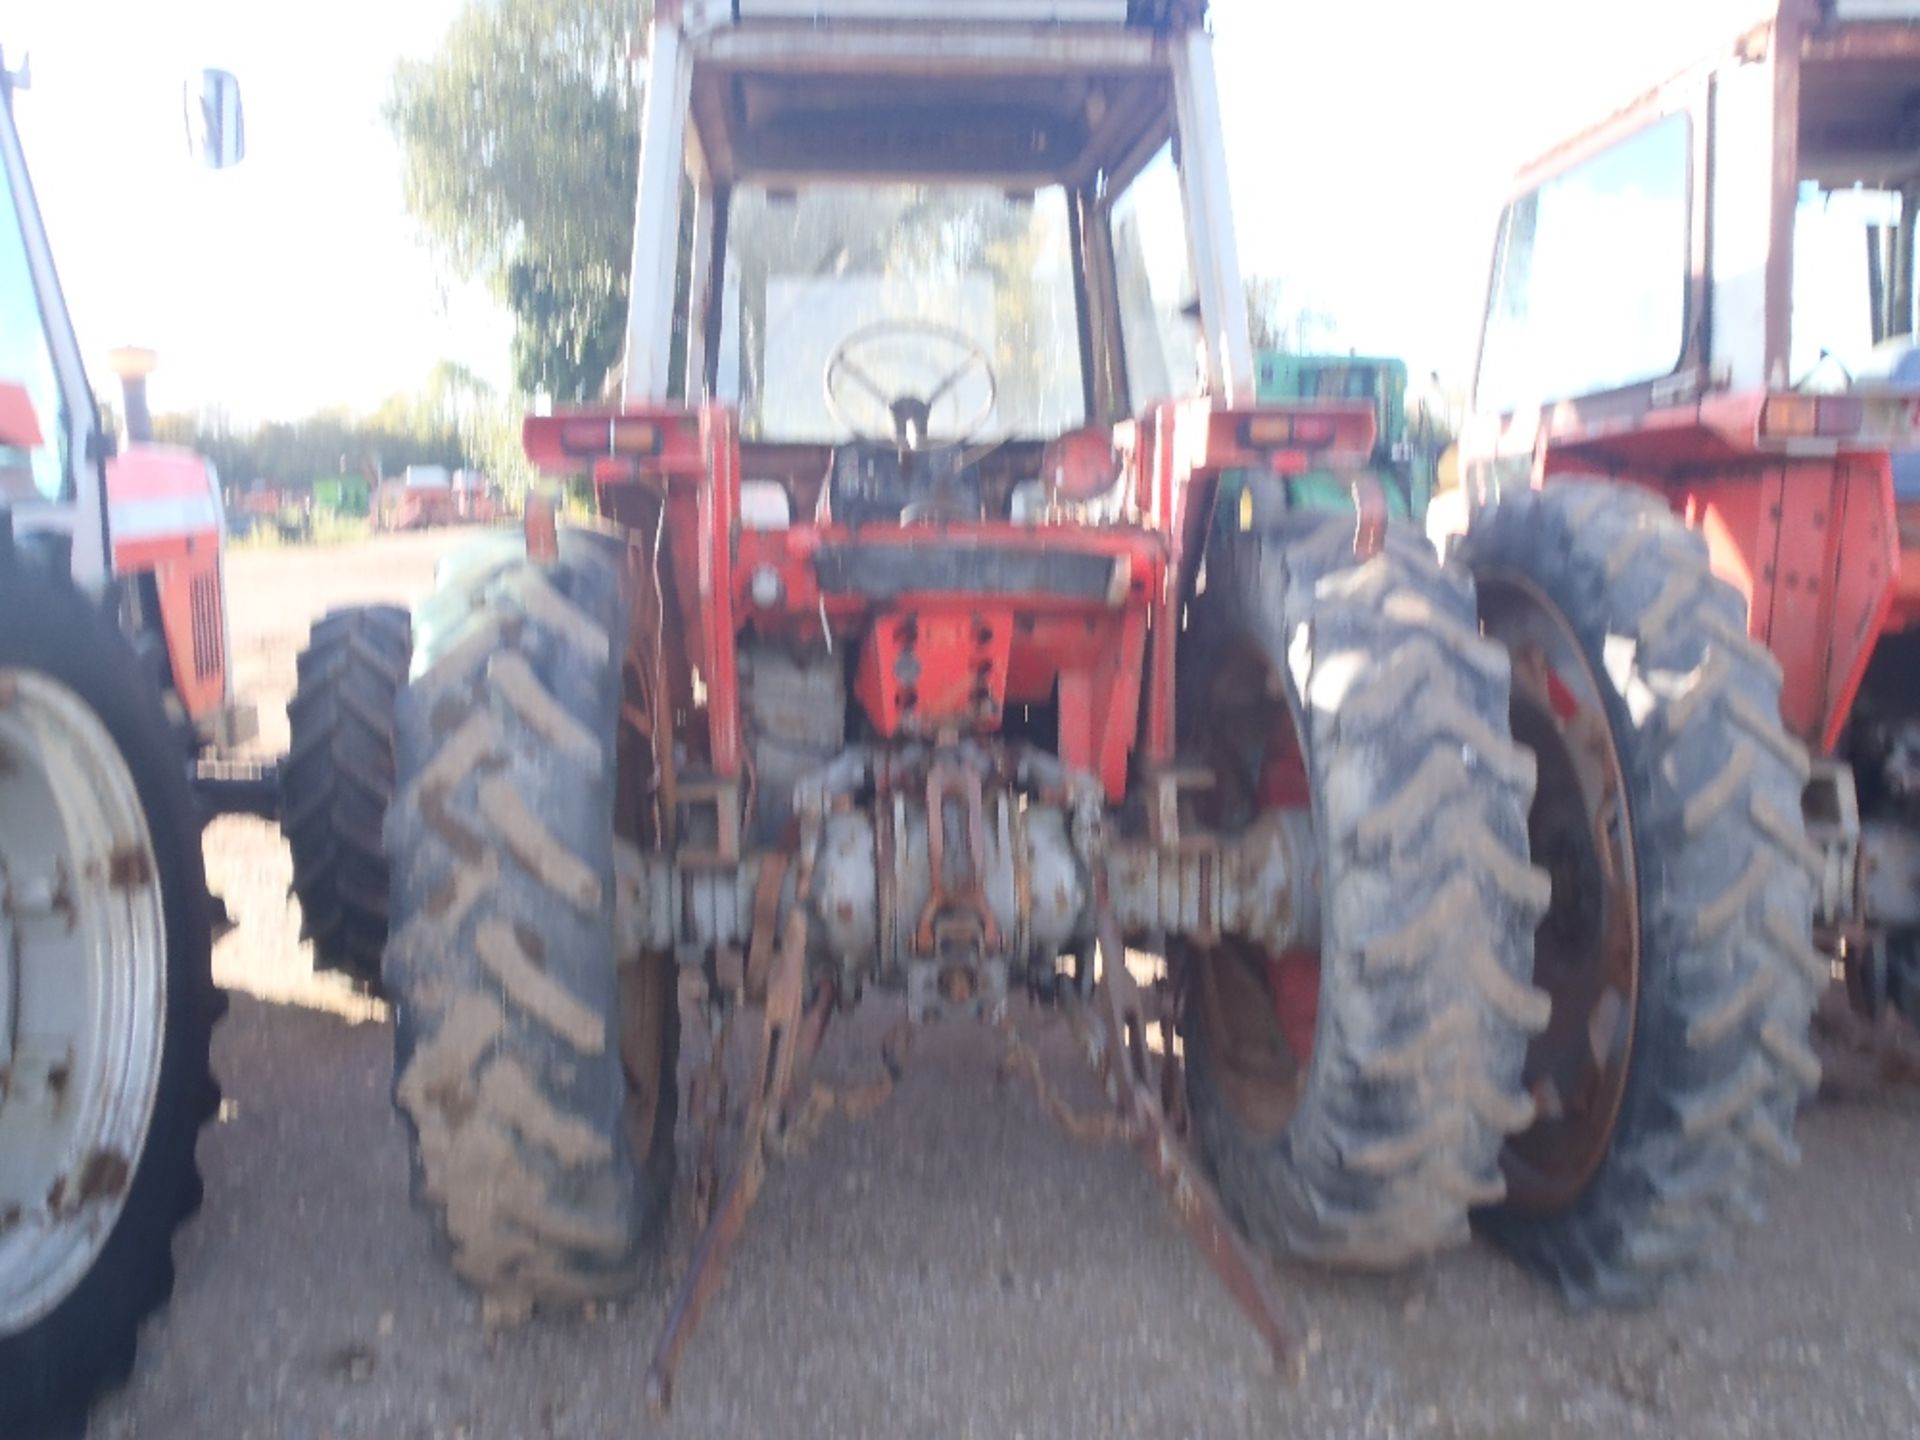 Massey Ferguson 575 Tractor. No V5 Ser. No. 265738 - Image 3 of 7